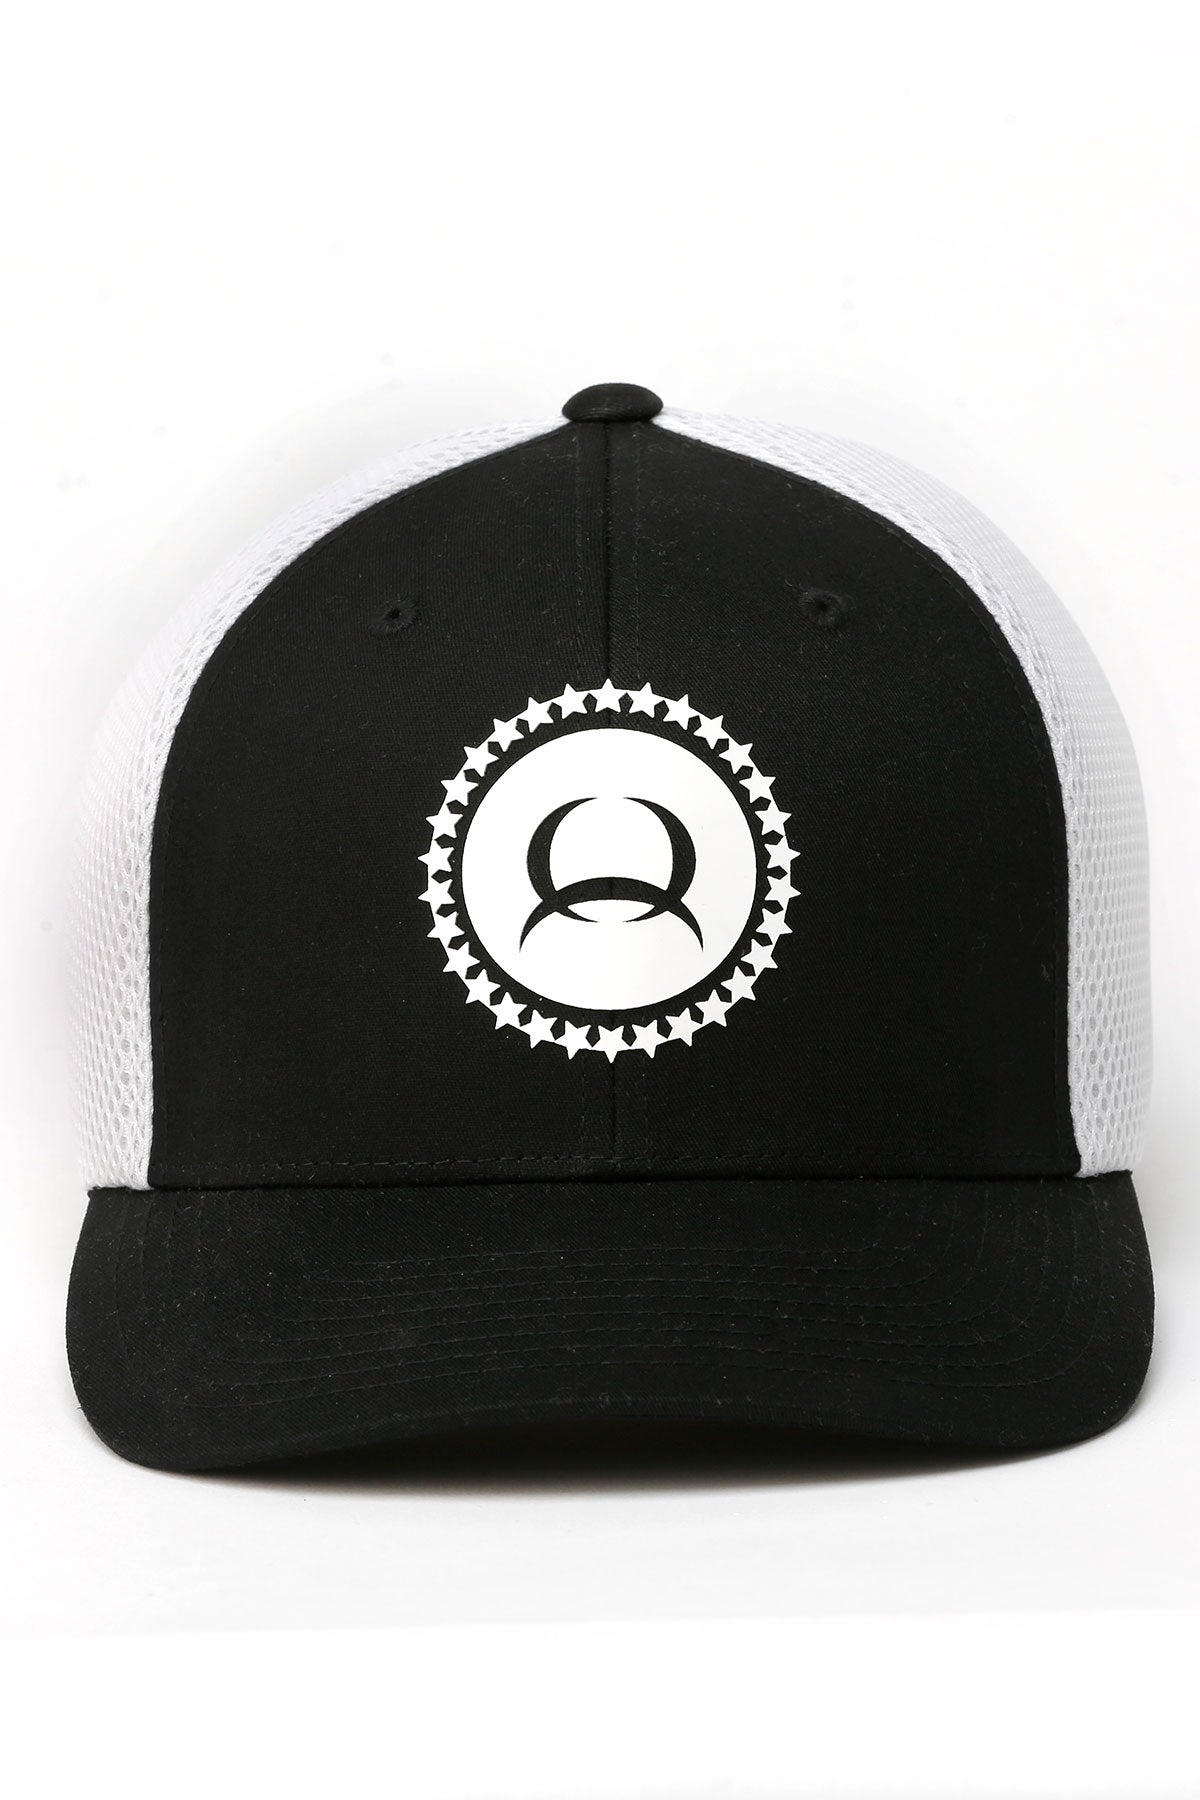 The Powerhouse Cinch Black/White Flexfit Cap/Hat